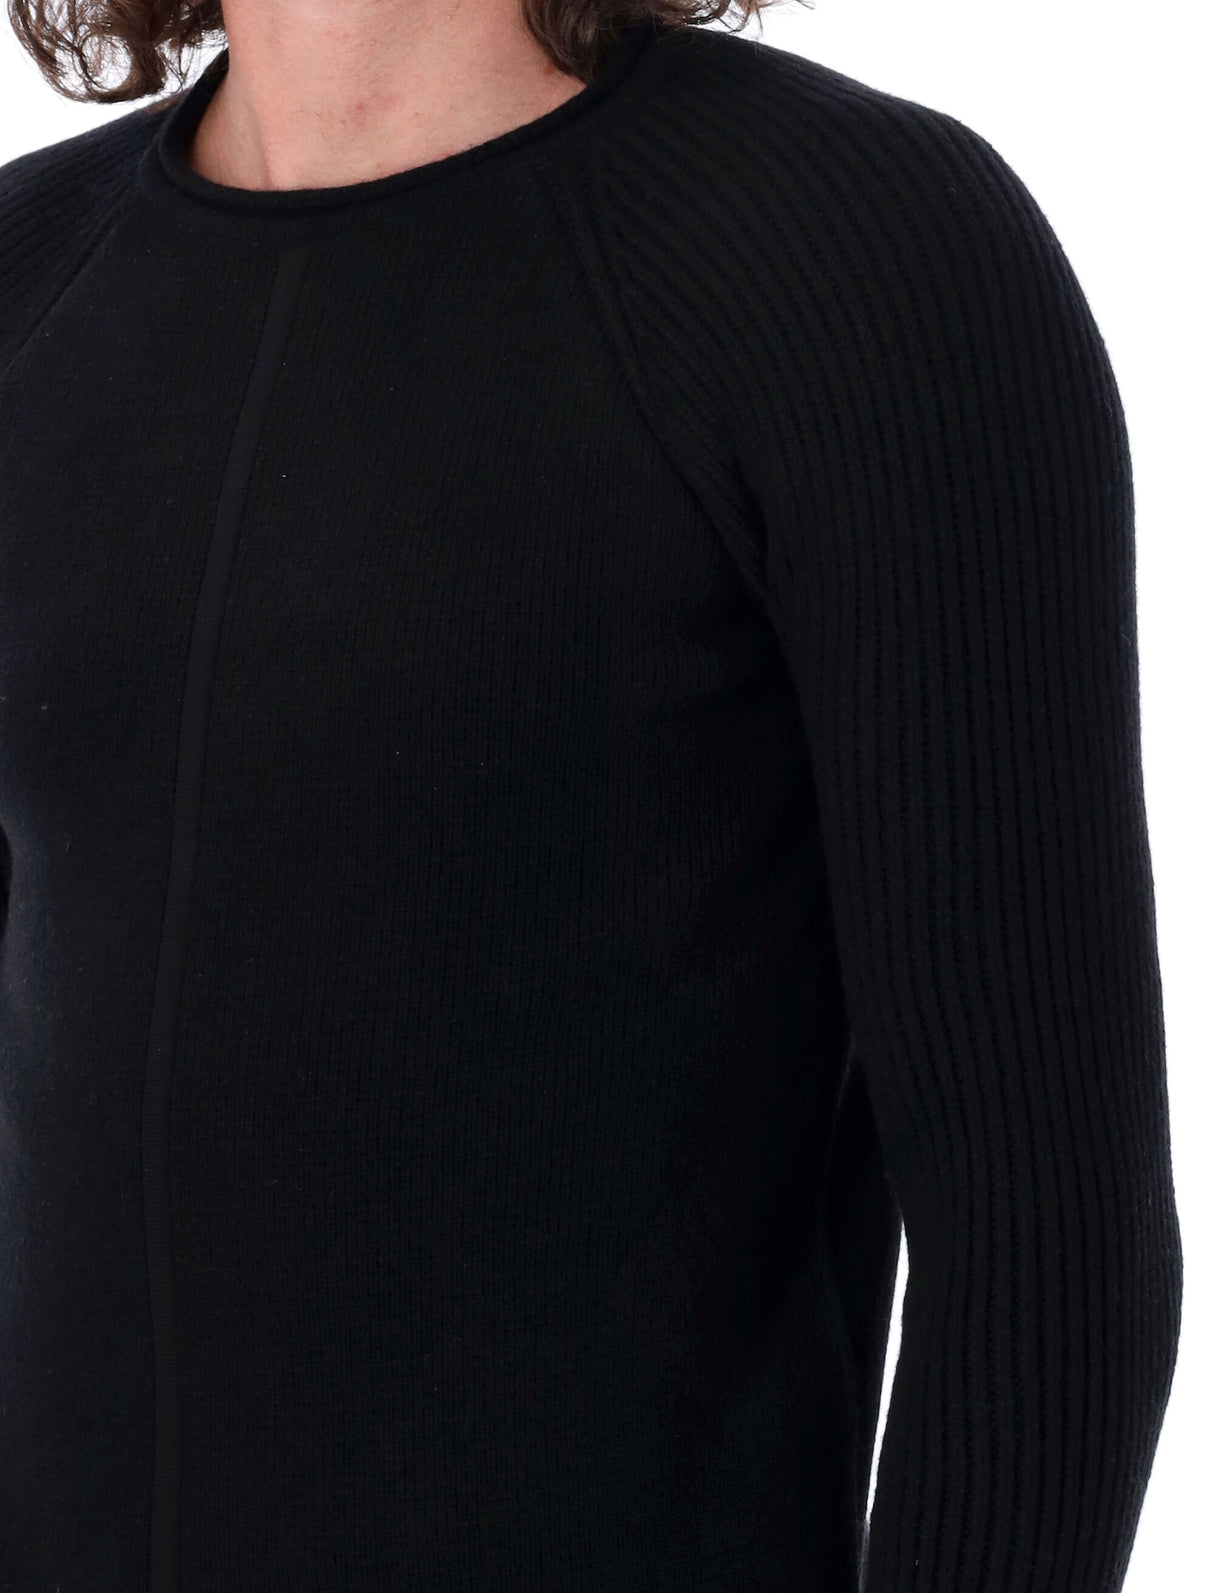 男士黑色圆领毛衣，带有细节肋线袖口和缎带编织饰边